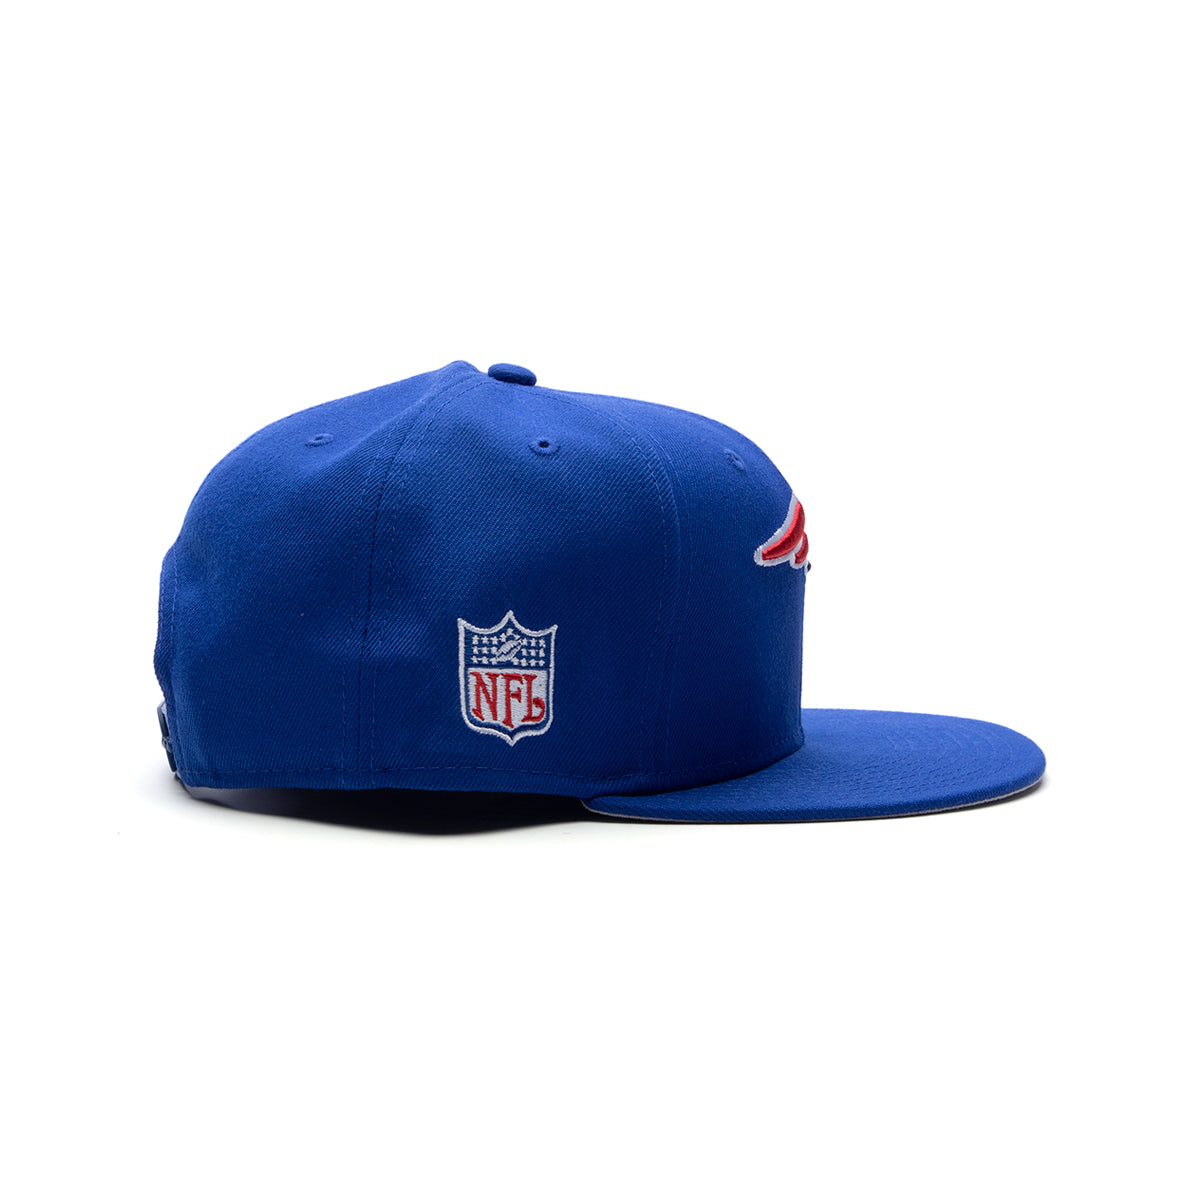 New Era 950 New England Patriots Cap Snapback (Royal Blue)